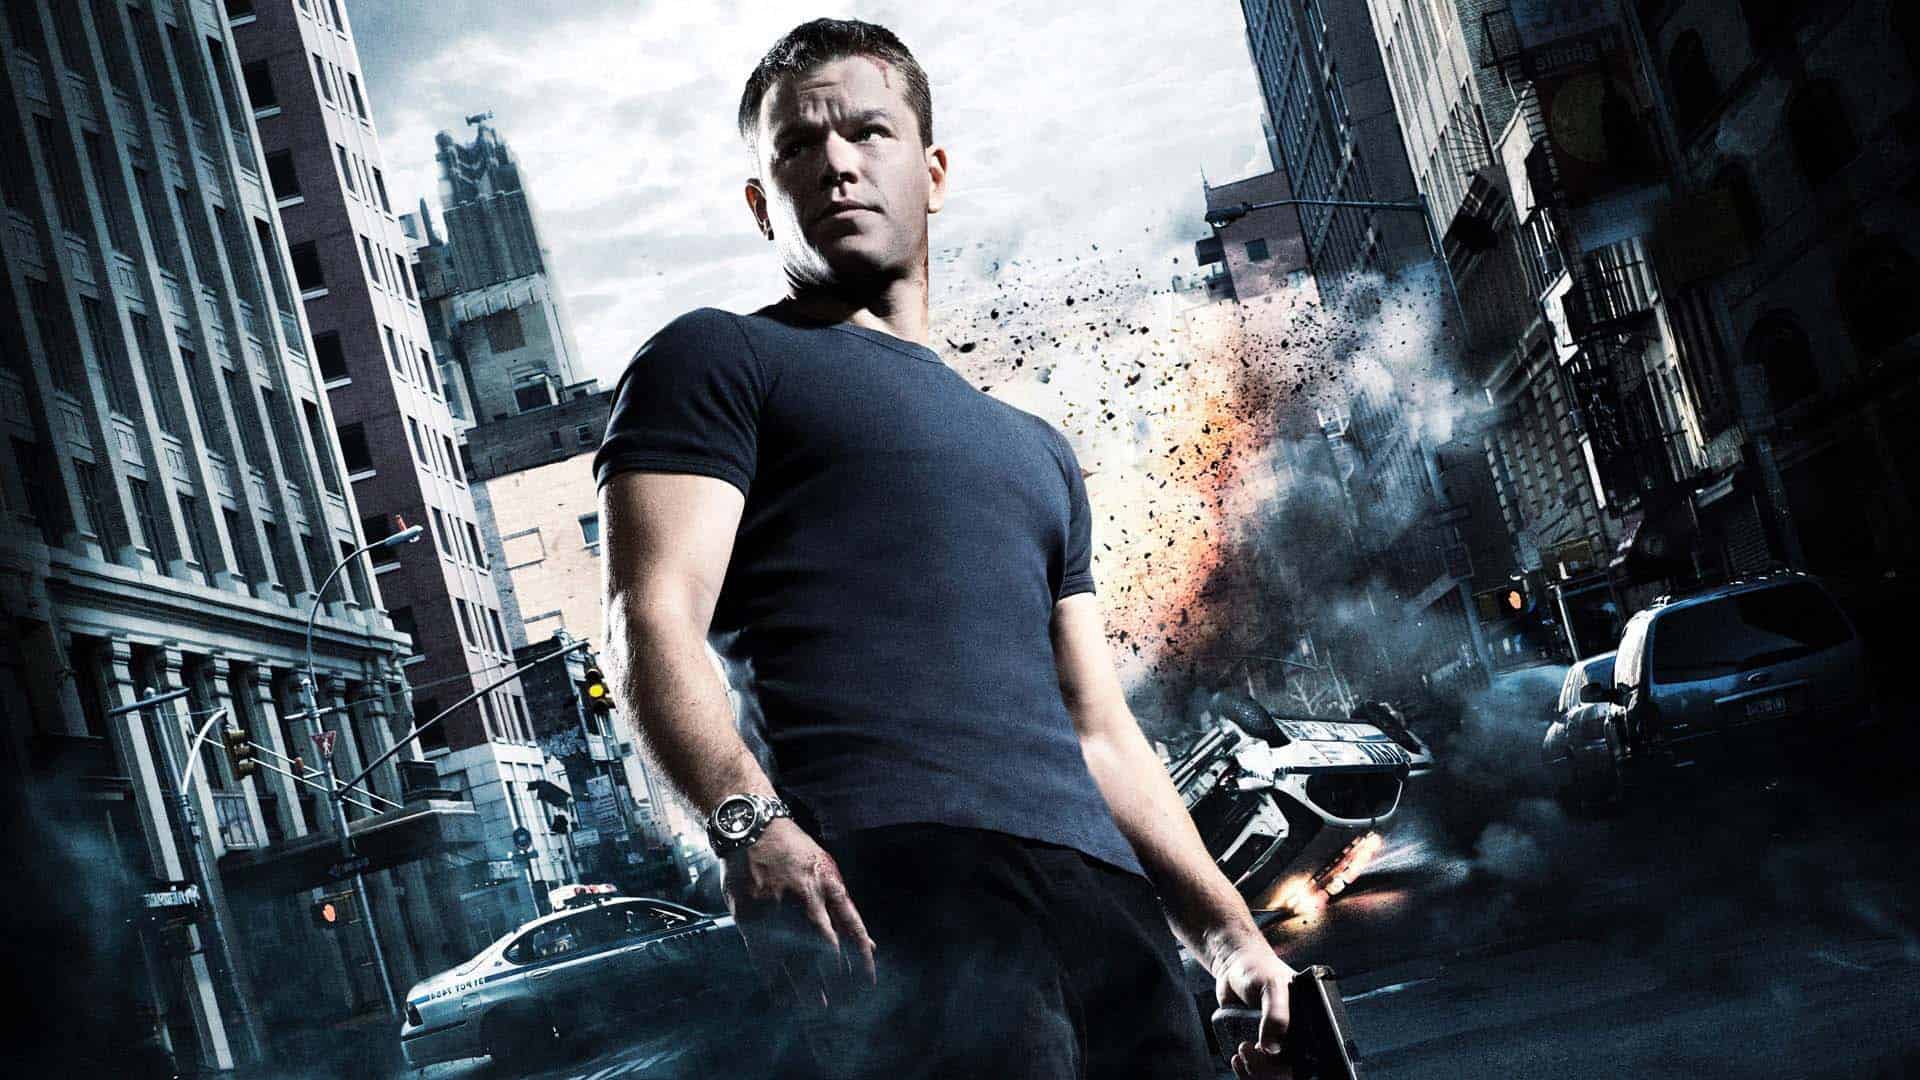 Jason Bourne en Universal Orlando REVELADO